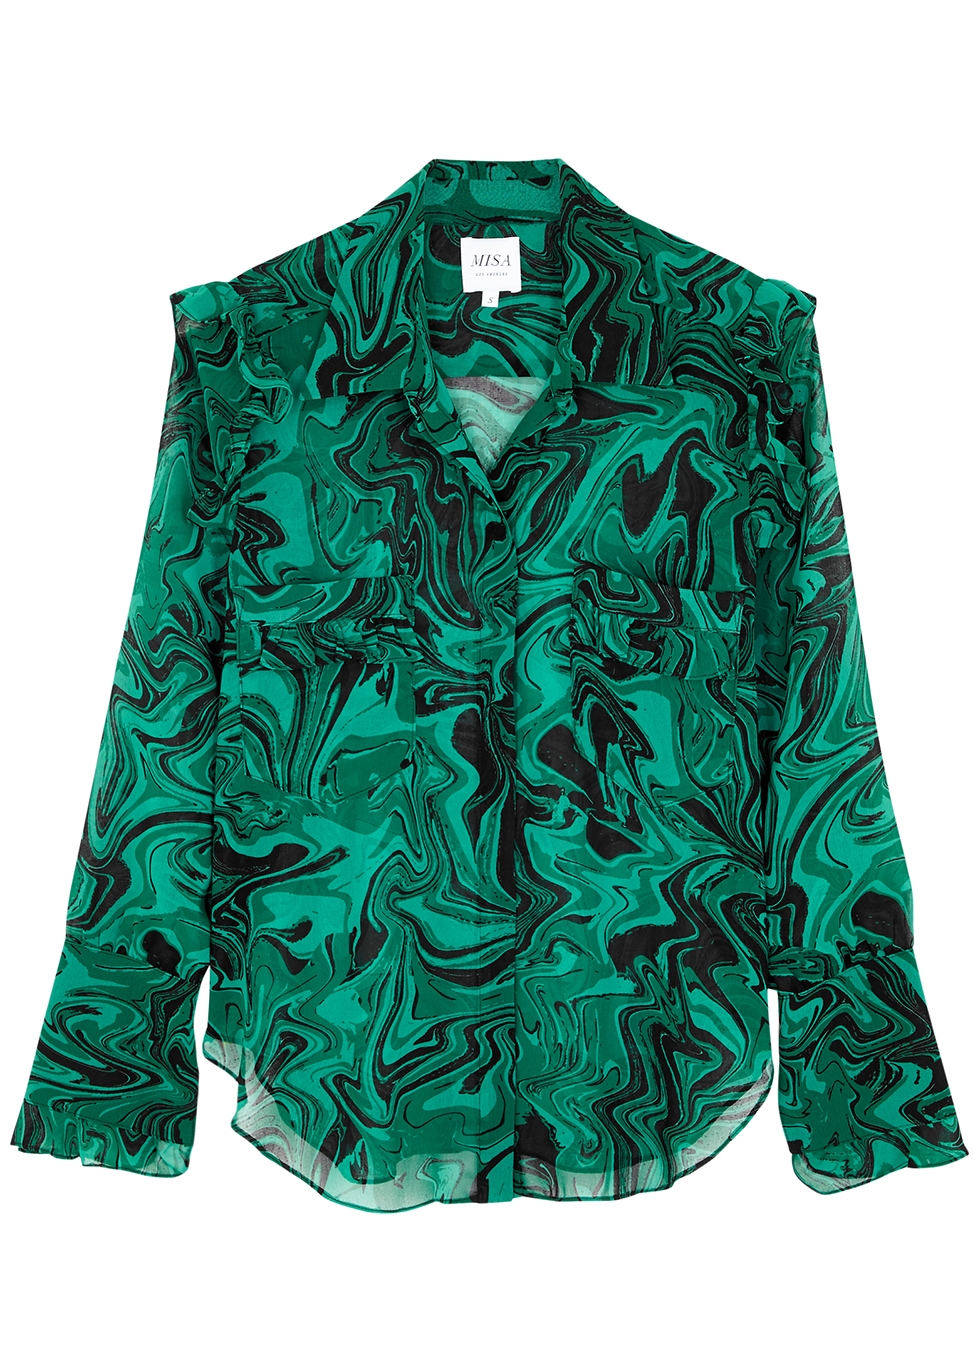 Anita green printed blouse